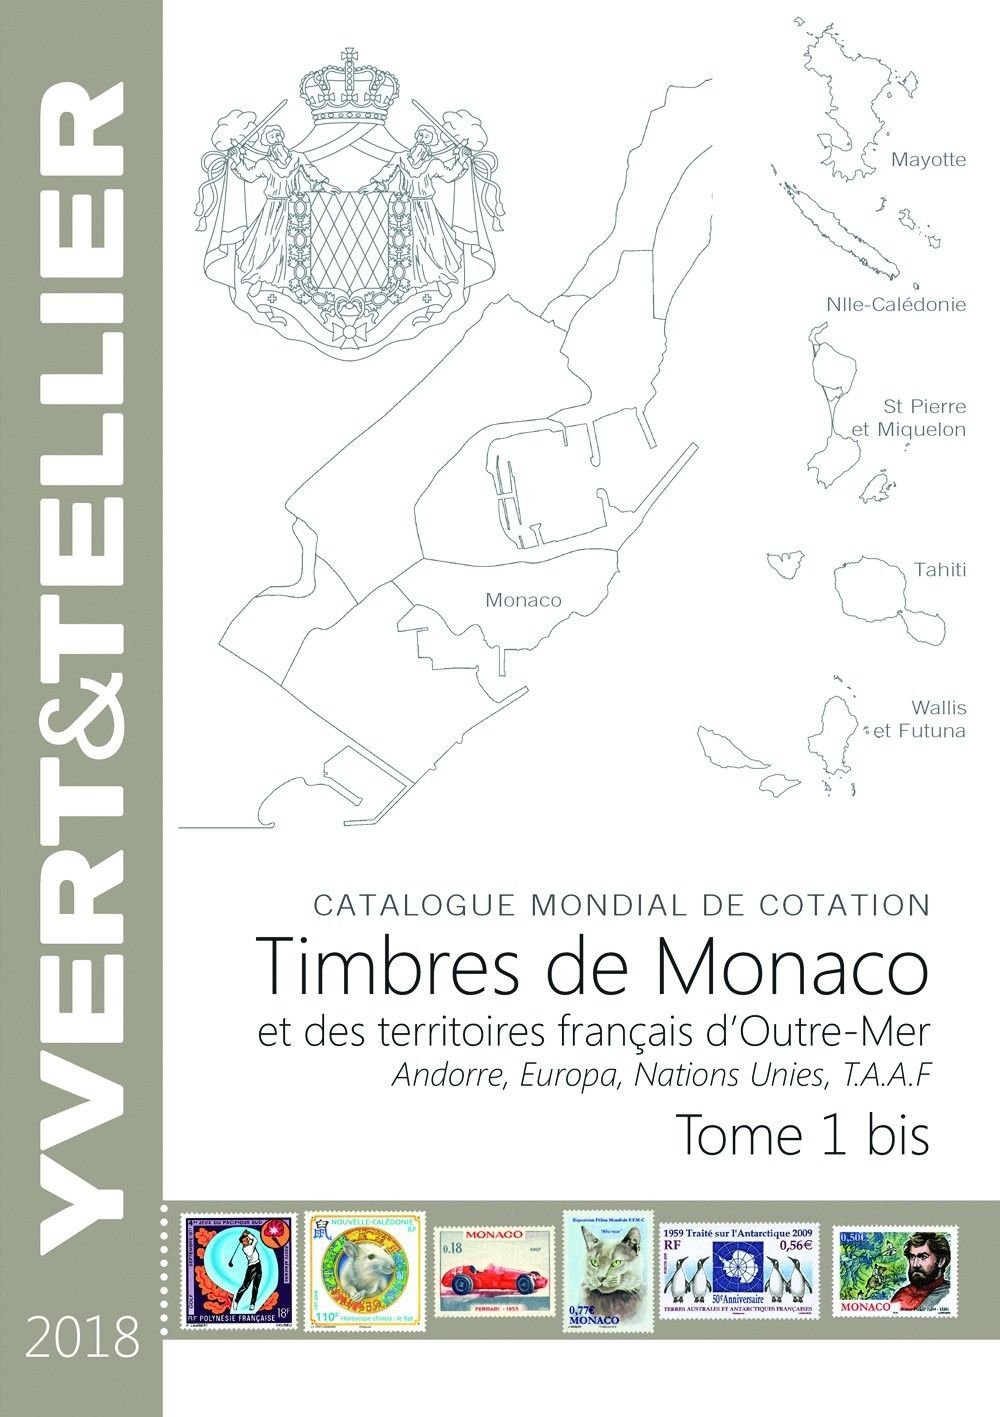 Catalogue Yvert et Tellier de timbres-poste. Vol. 1 bis. Territoires français d'outre-mer (Mayotte, 